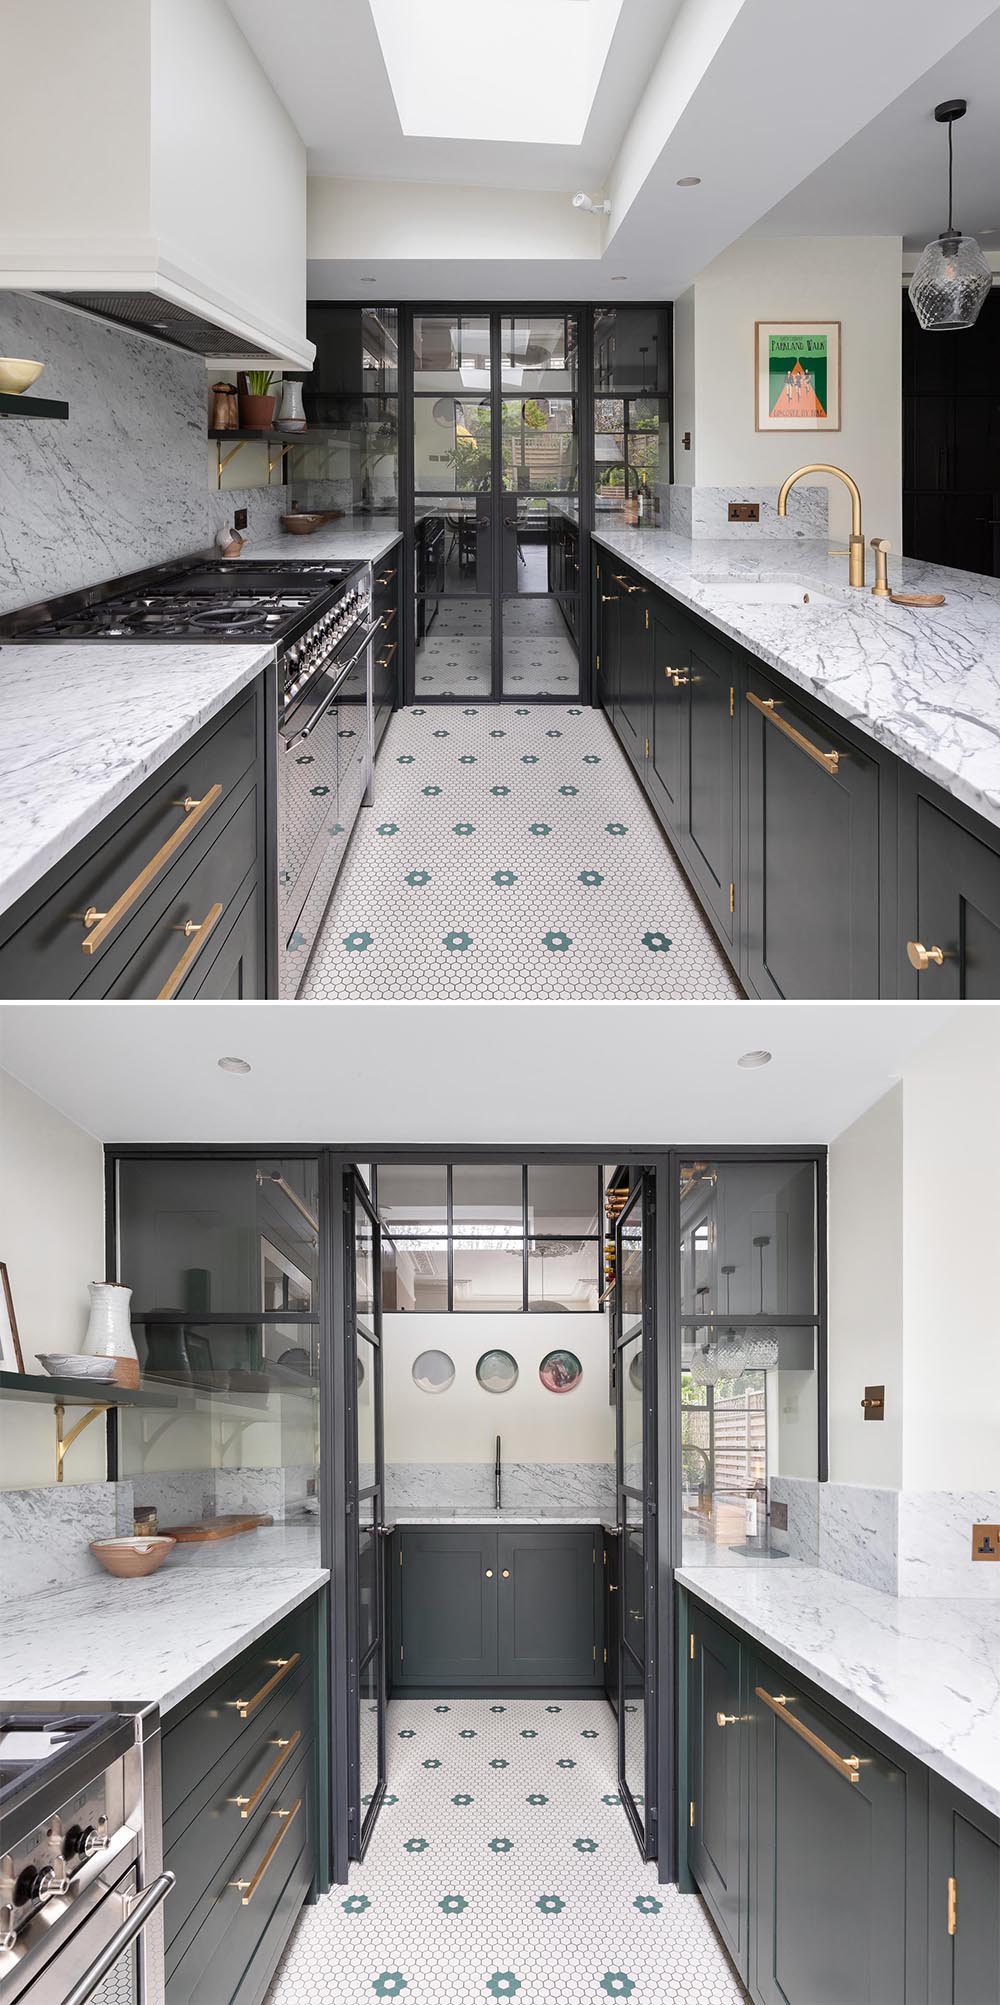 Современная кухня с темными шкафами и серыми мраморными столешницами, которые переходят в кладовую за стеклянной стеной.